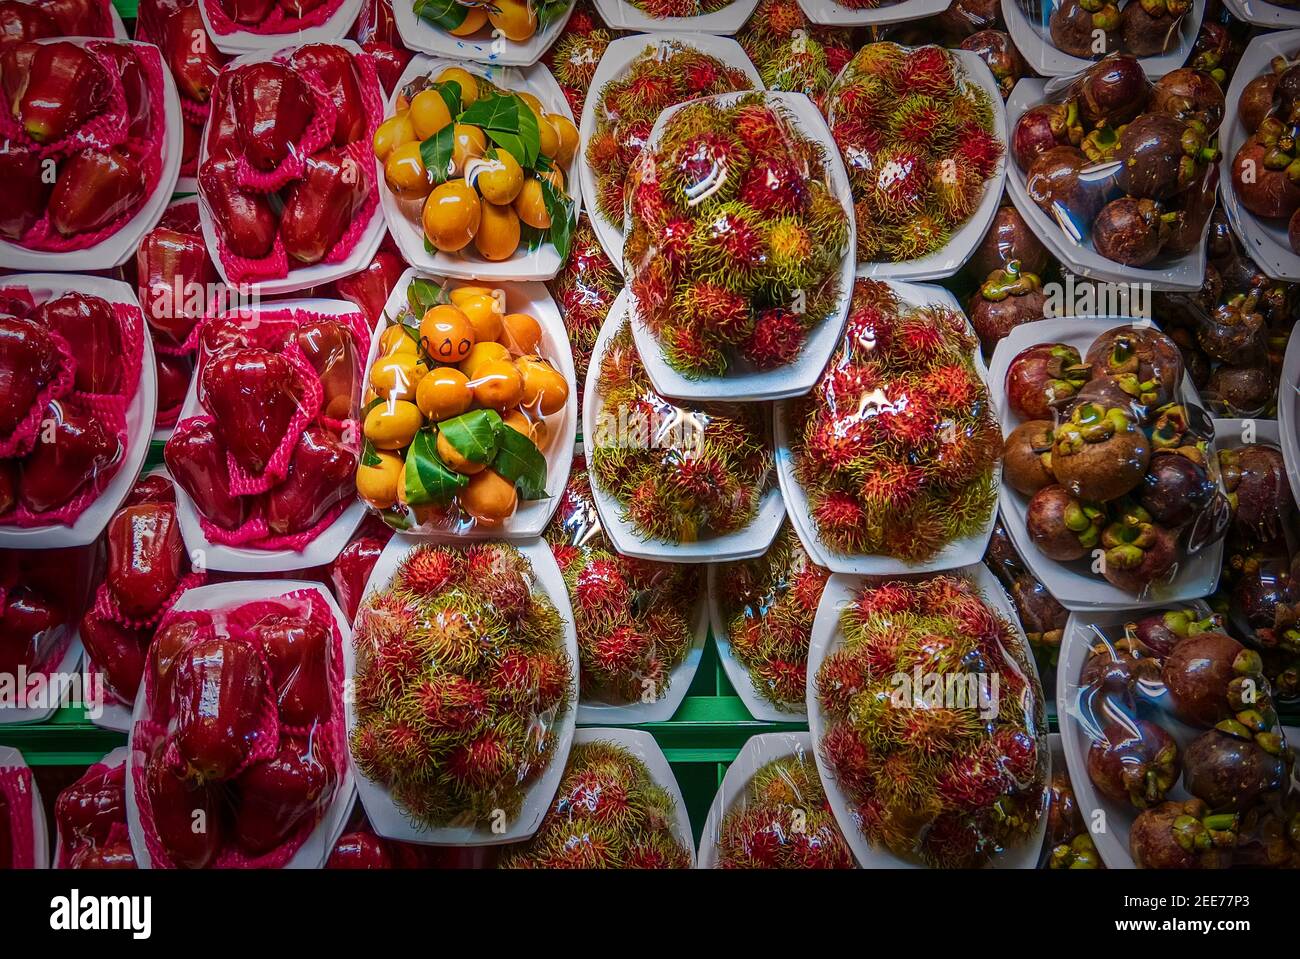 Marché aux fruits de rue en Thaïlande avec divers fruits exotiques frais: Mangousteen, rambutan, pomme rose dans des emballages en plastique Banque D'Images